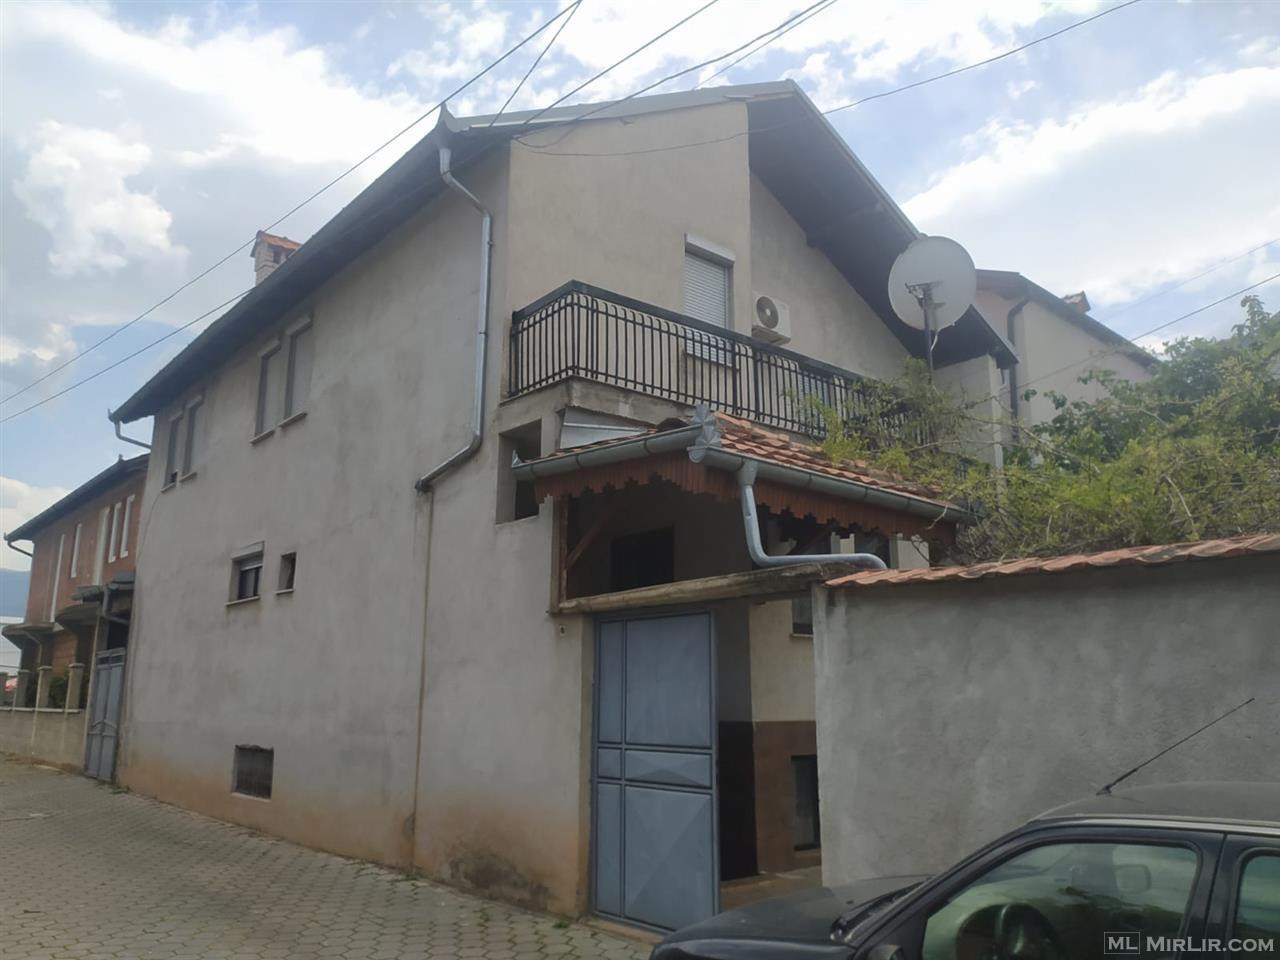 Shtëpi ne shitje Prizren  “JETA E RE”